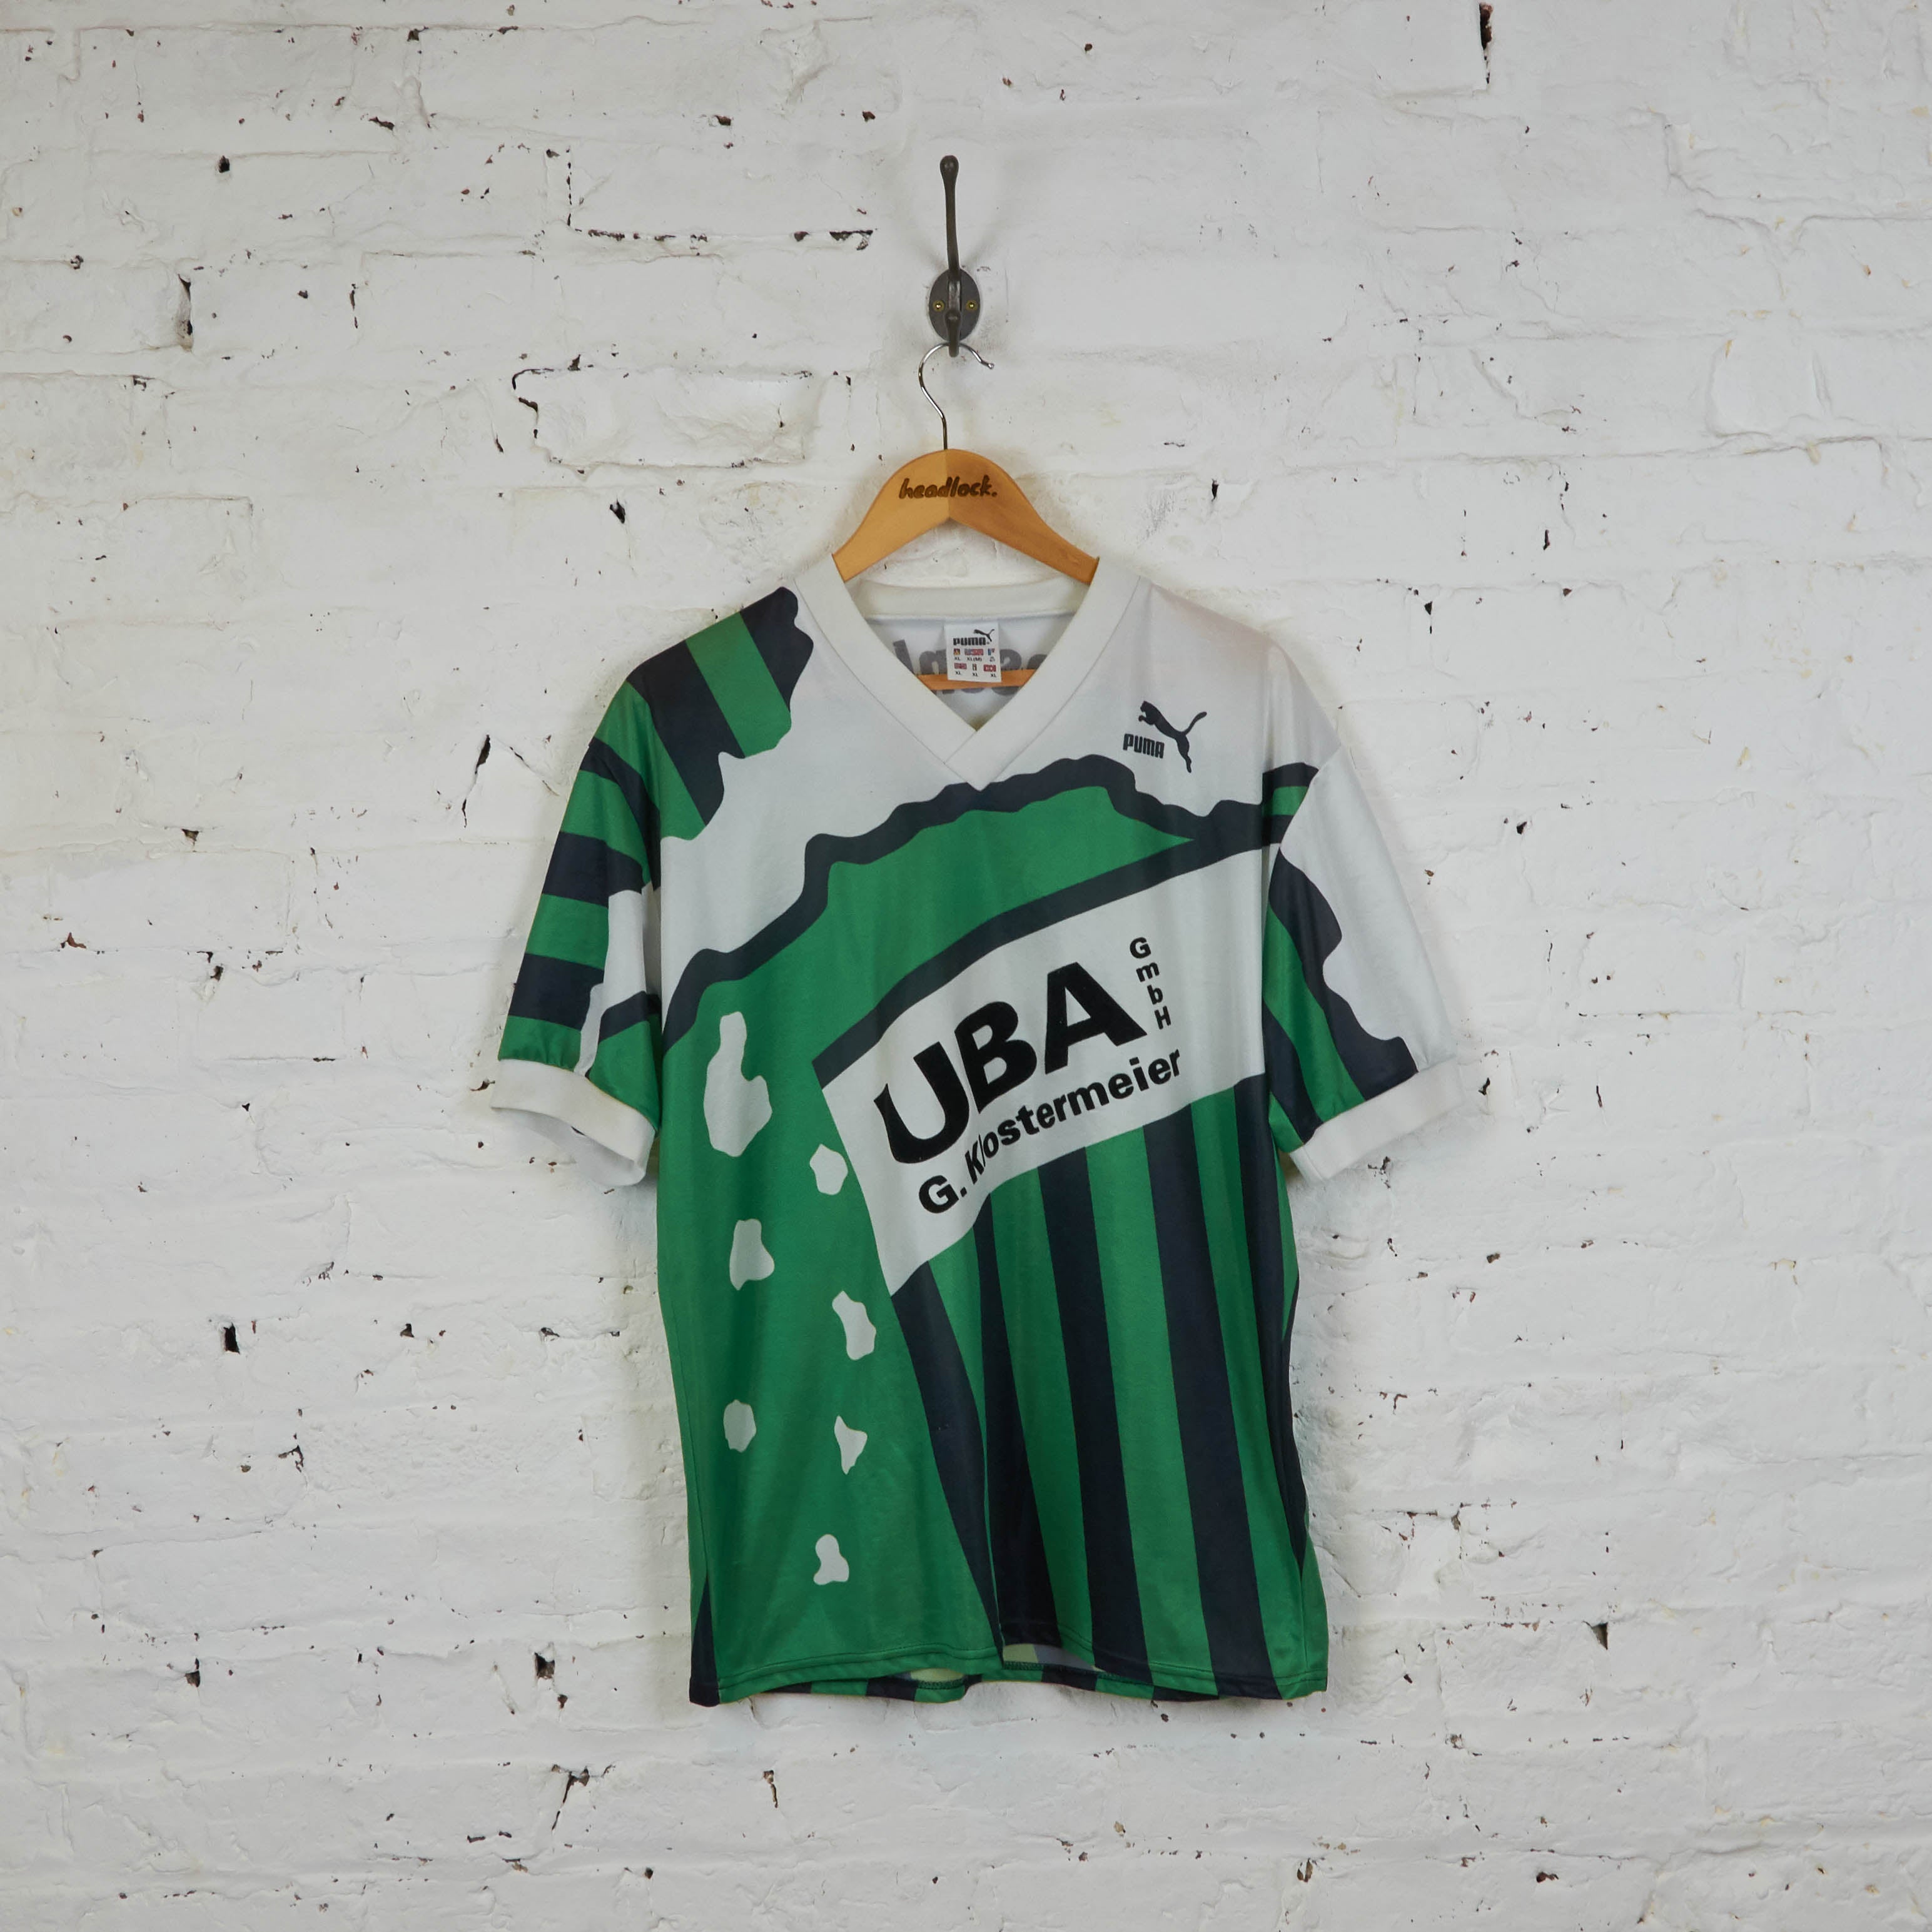 Mezquita Haz lo mejor que pueda Sombreado Puma Template 90s Football Shirt - Green - XL – Headlock